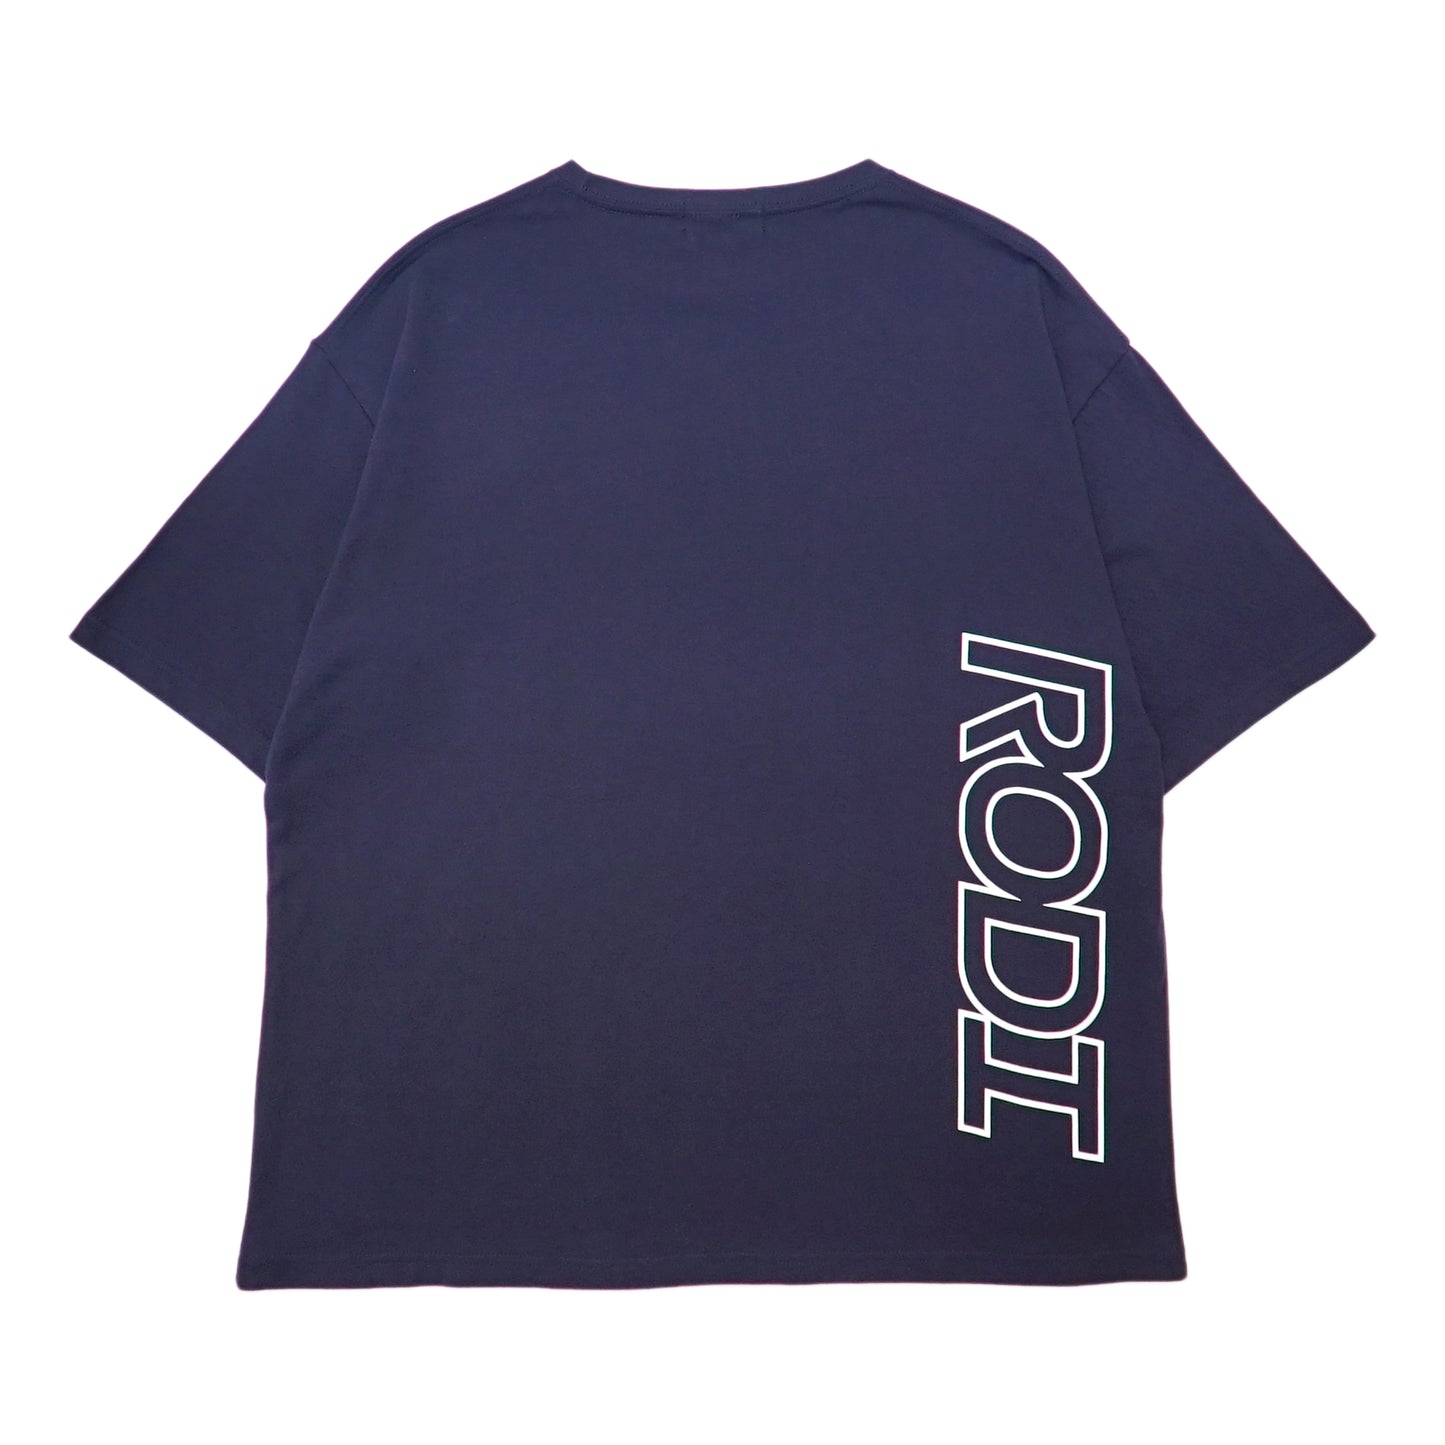 RODI - Creed T 卹/海軍藍